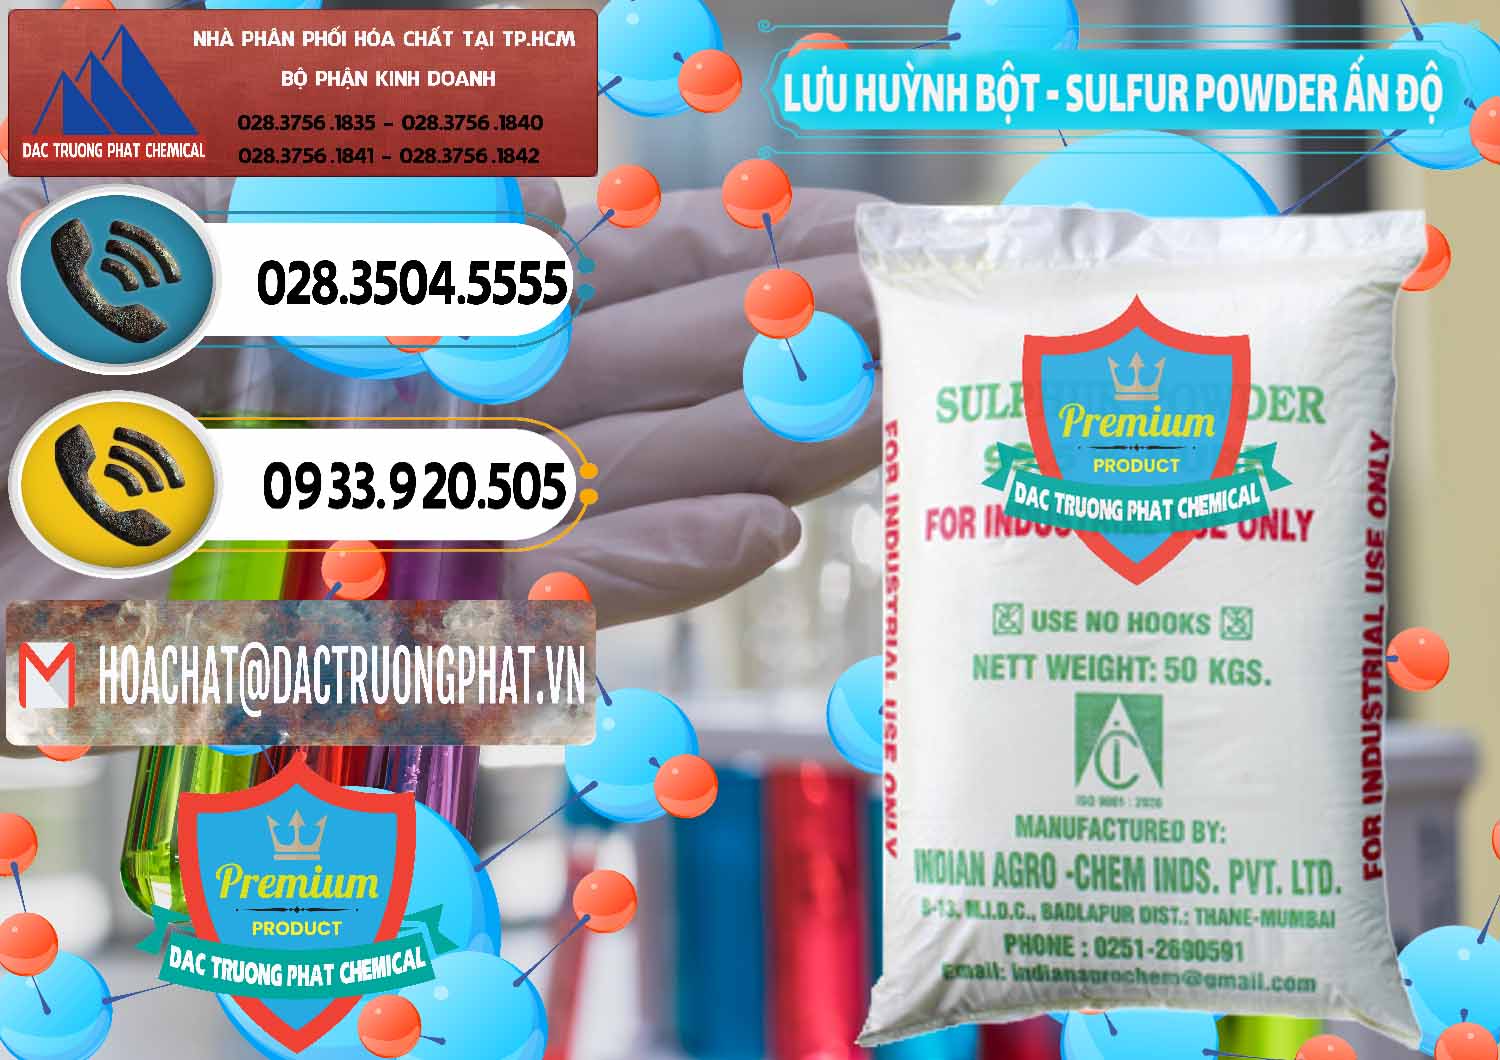 Cty bán ( cung ứng ) Lưu huỳnh Bột - Sulfur Powder Ấn Độ India - 0347 - Cty chuyên cung cấp ( nhập khẩu ) hóa chất tại TP.HCM - hoachatdetnhuom.vn